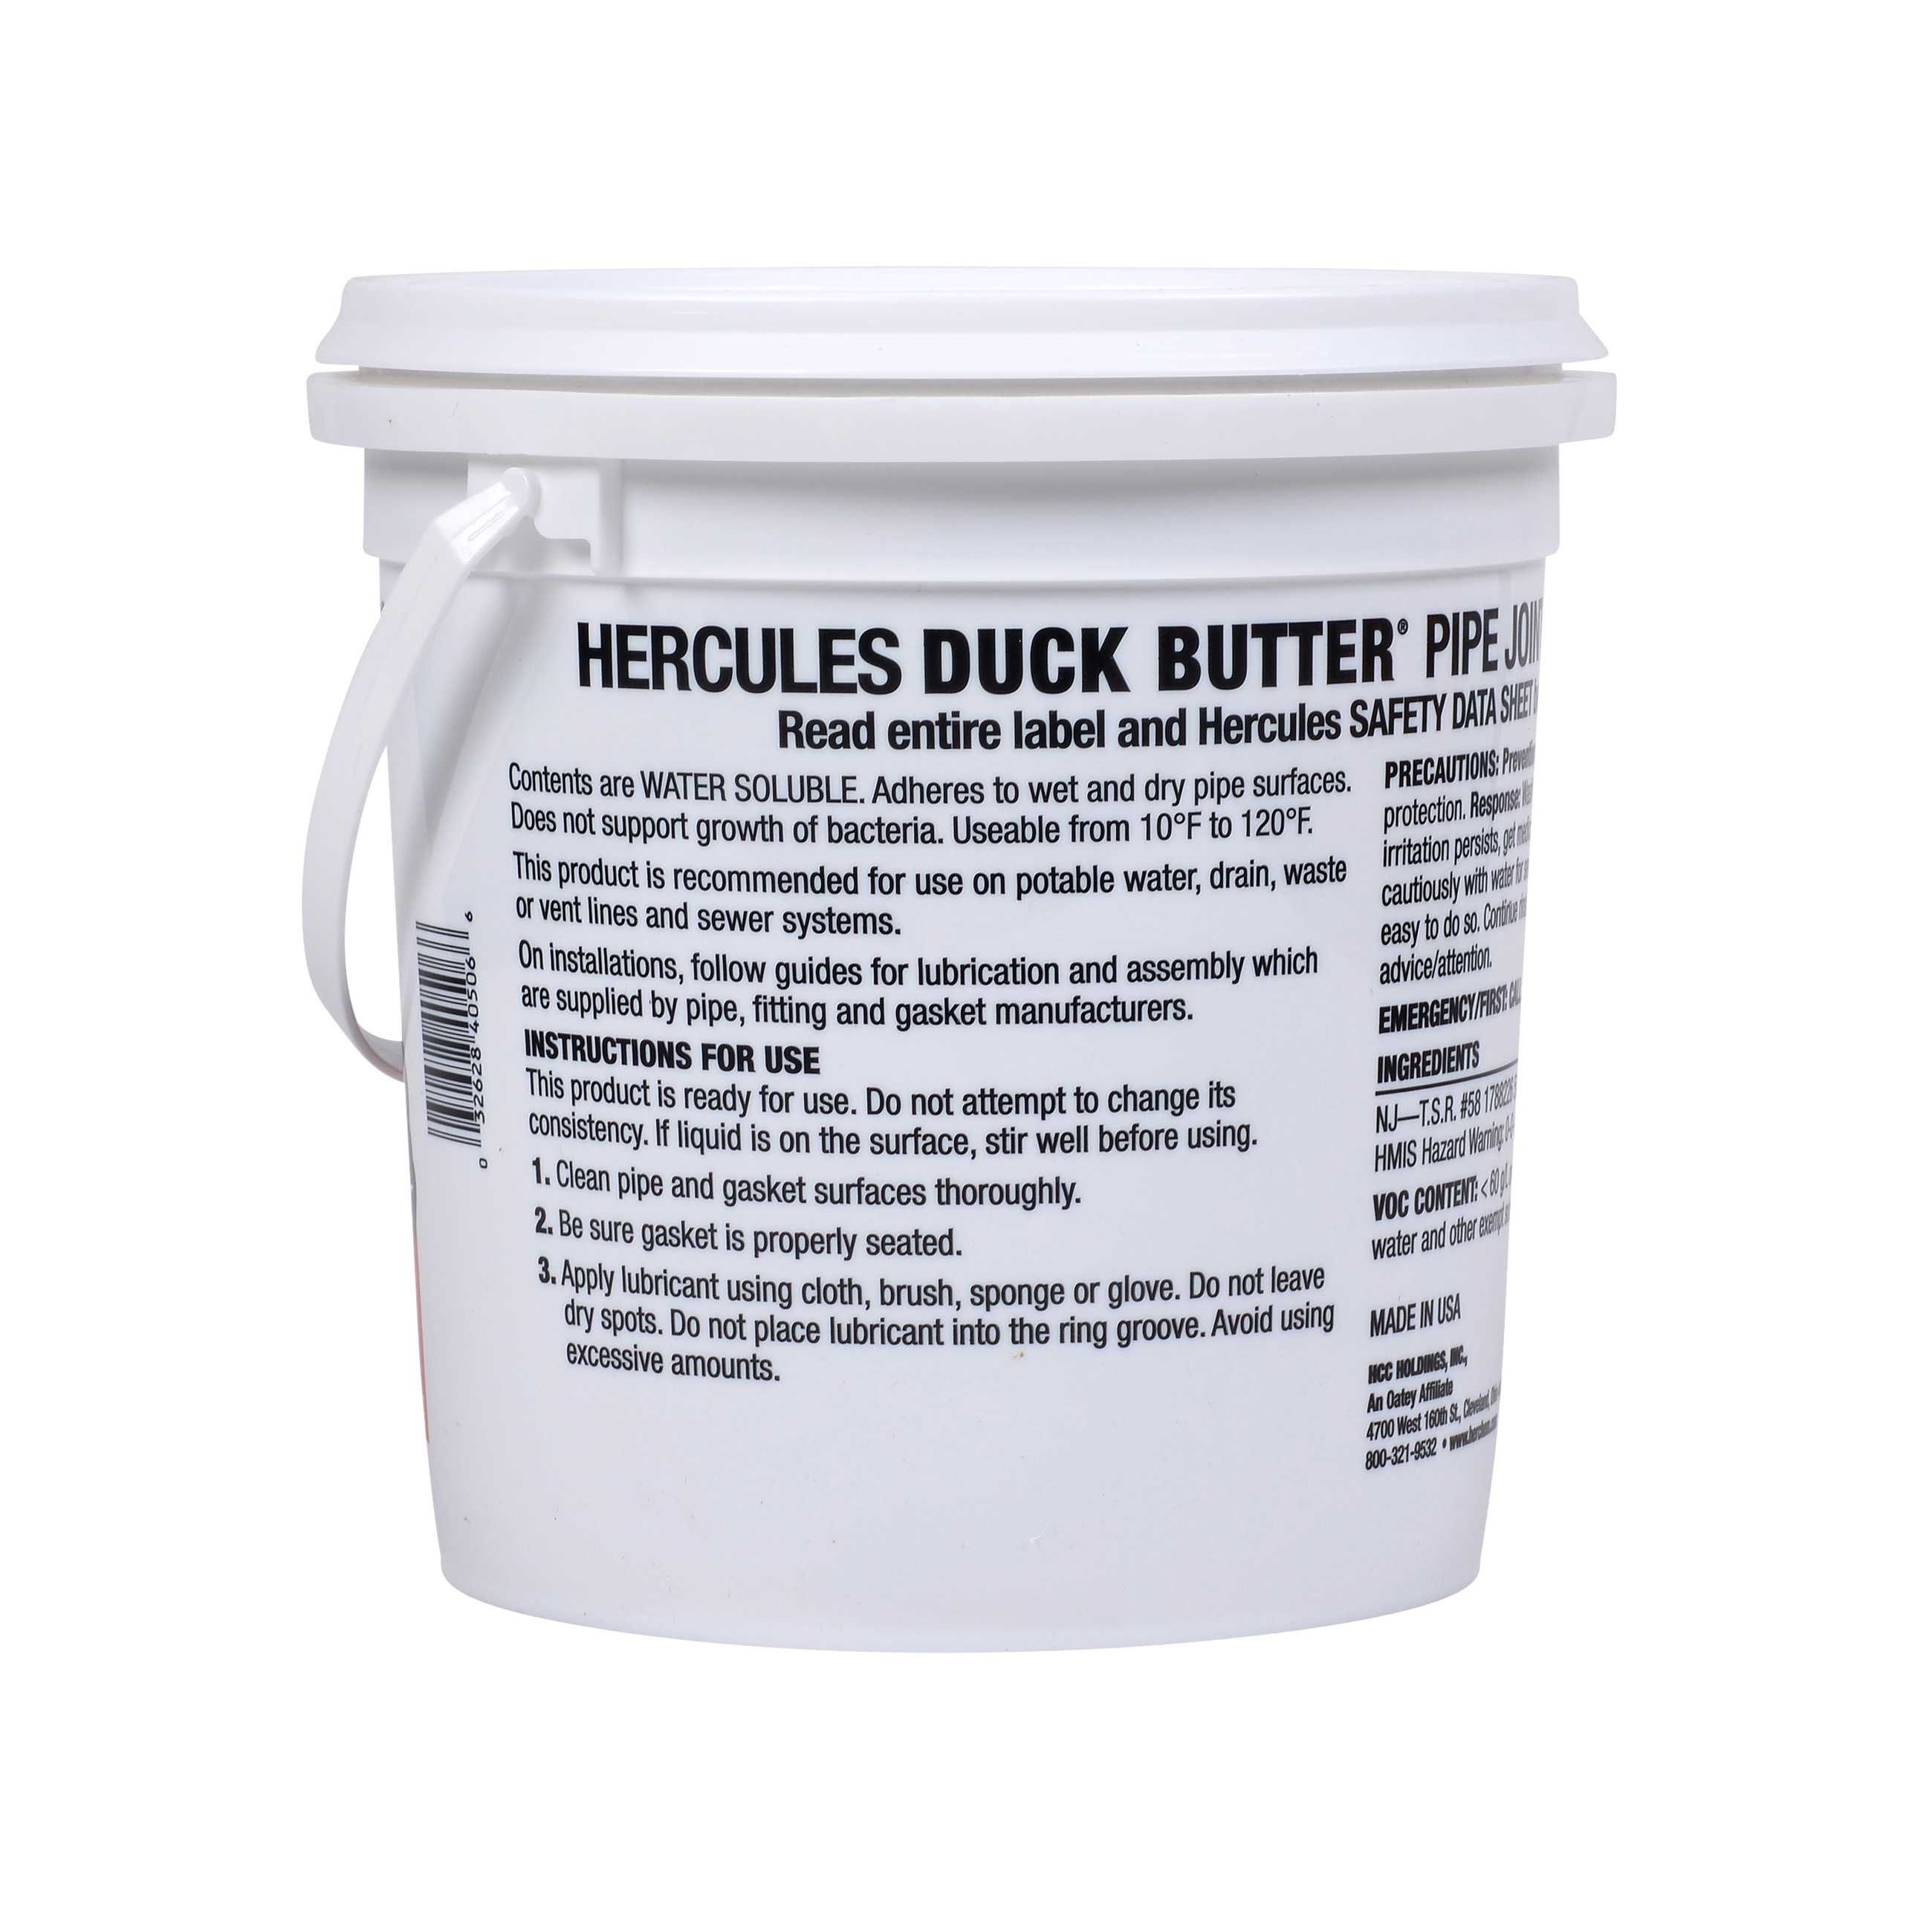 Hercules Duck Butter Oatey.